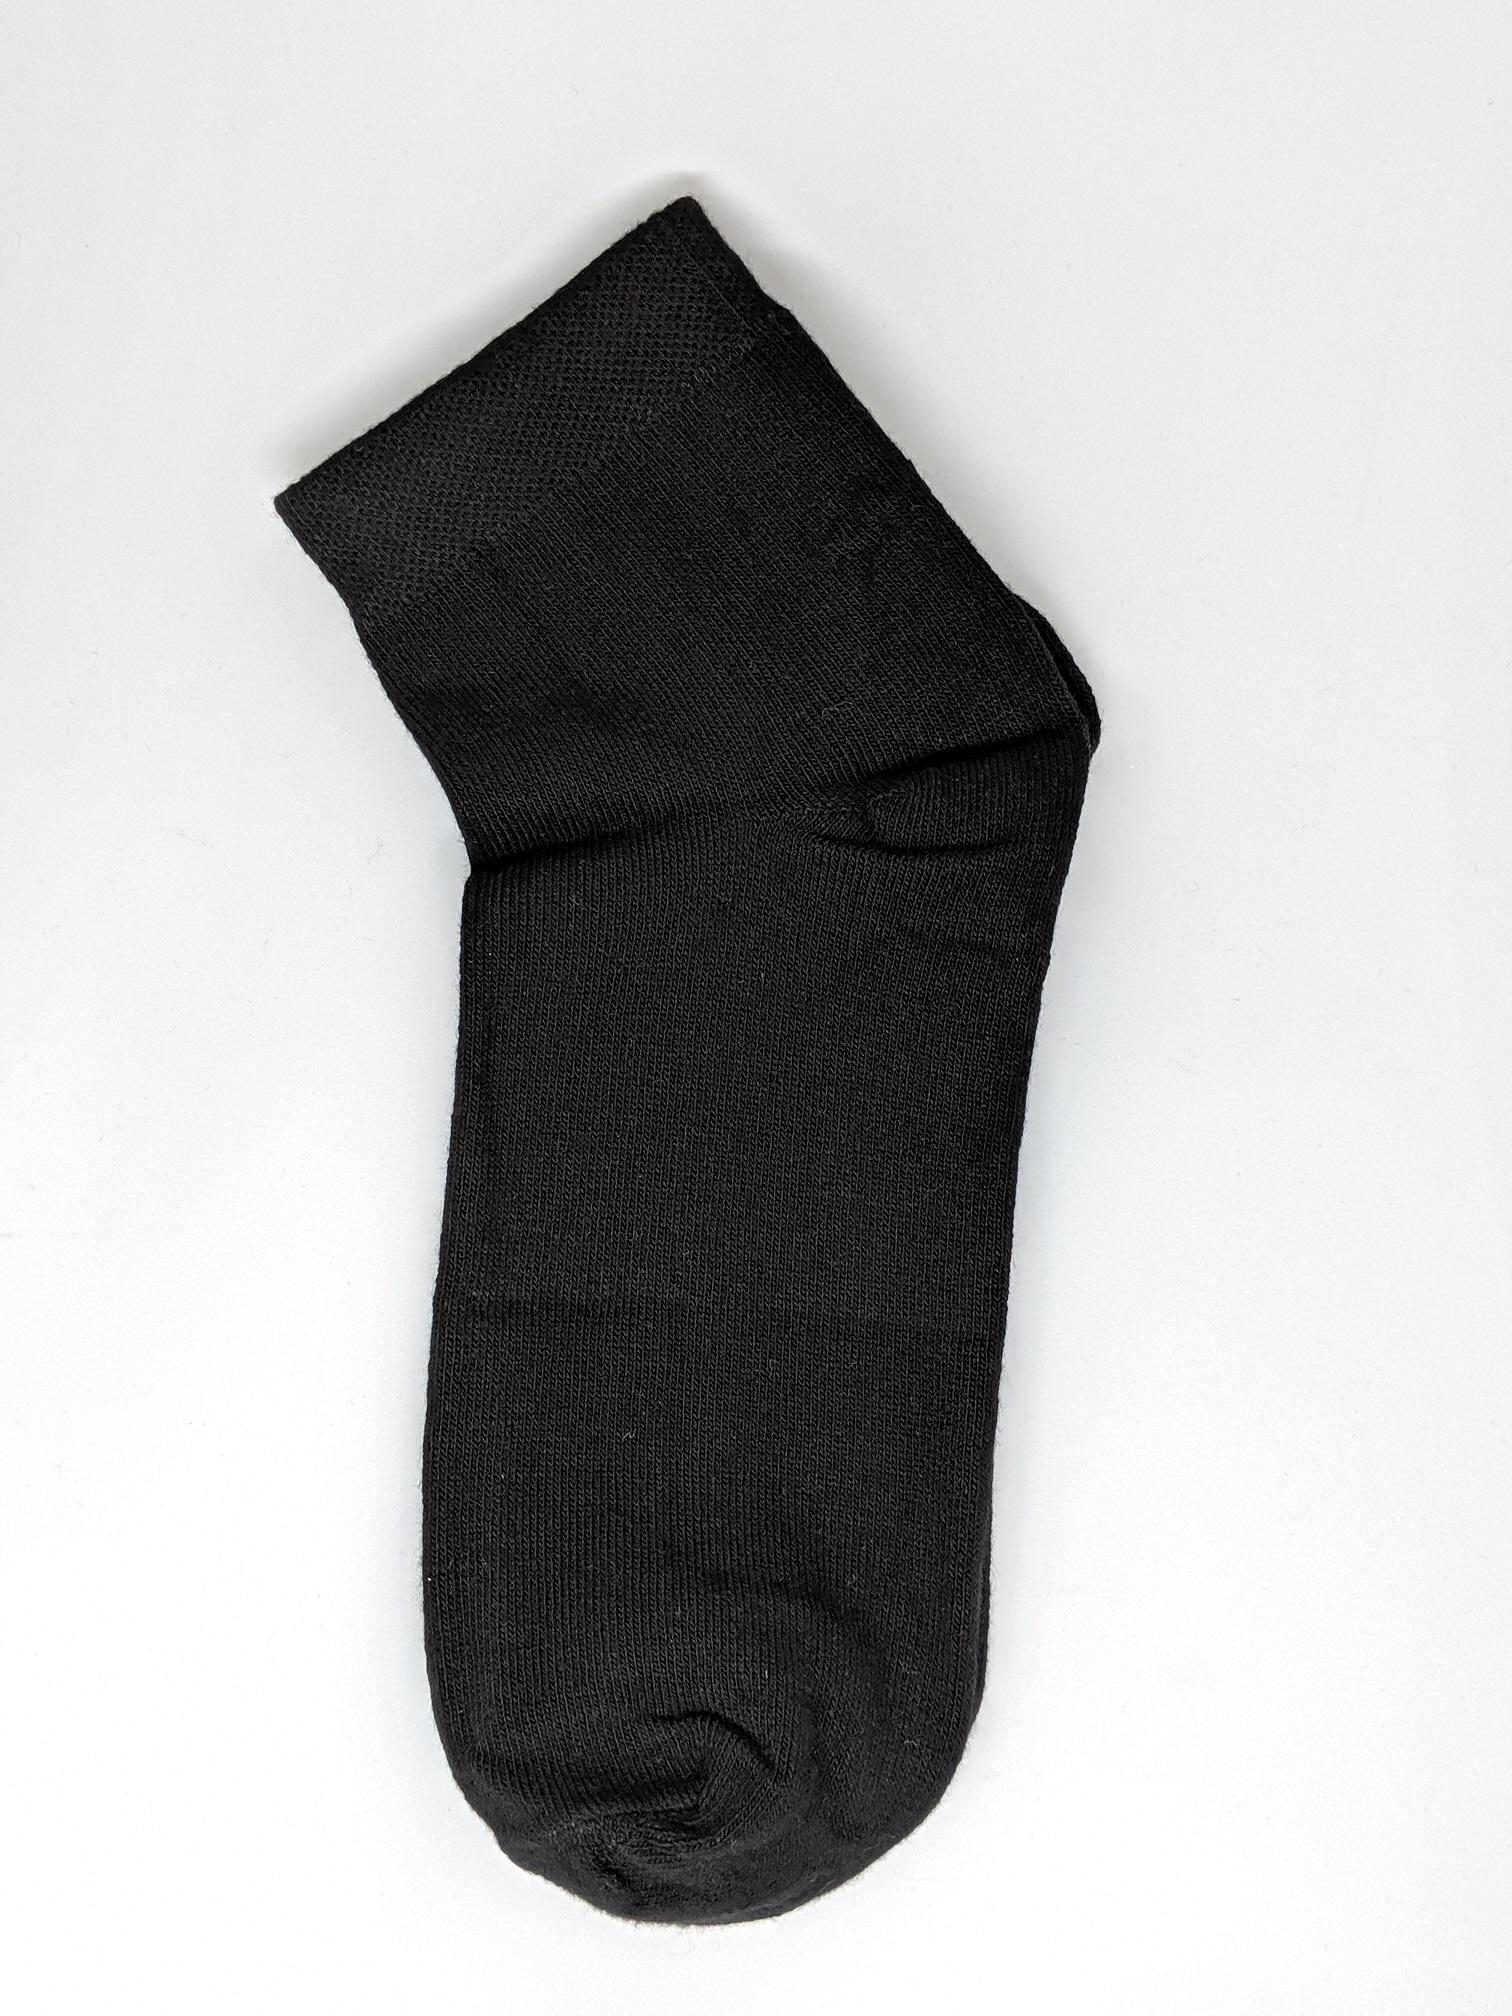 Black Cotton School Ankle Socks for Children